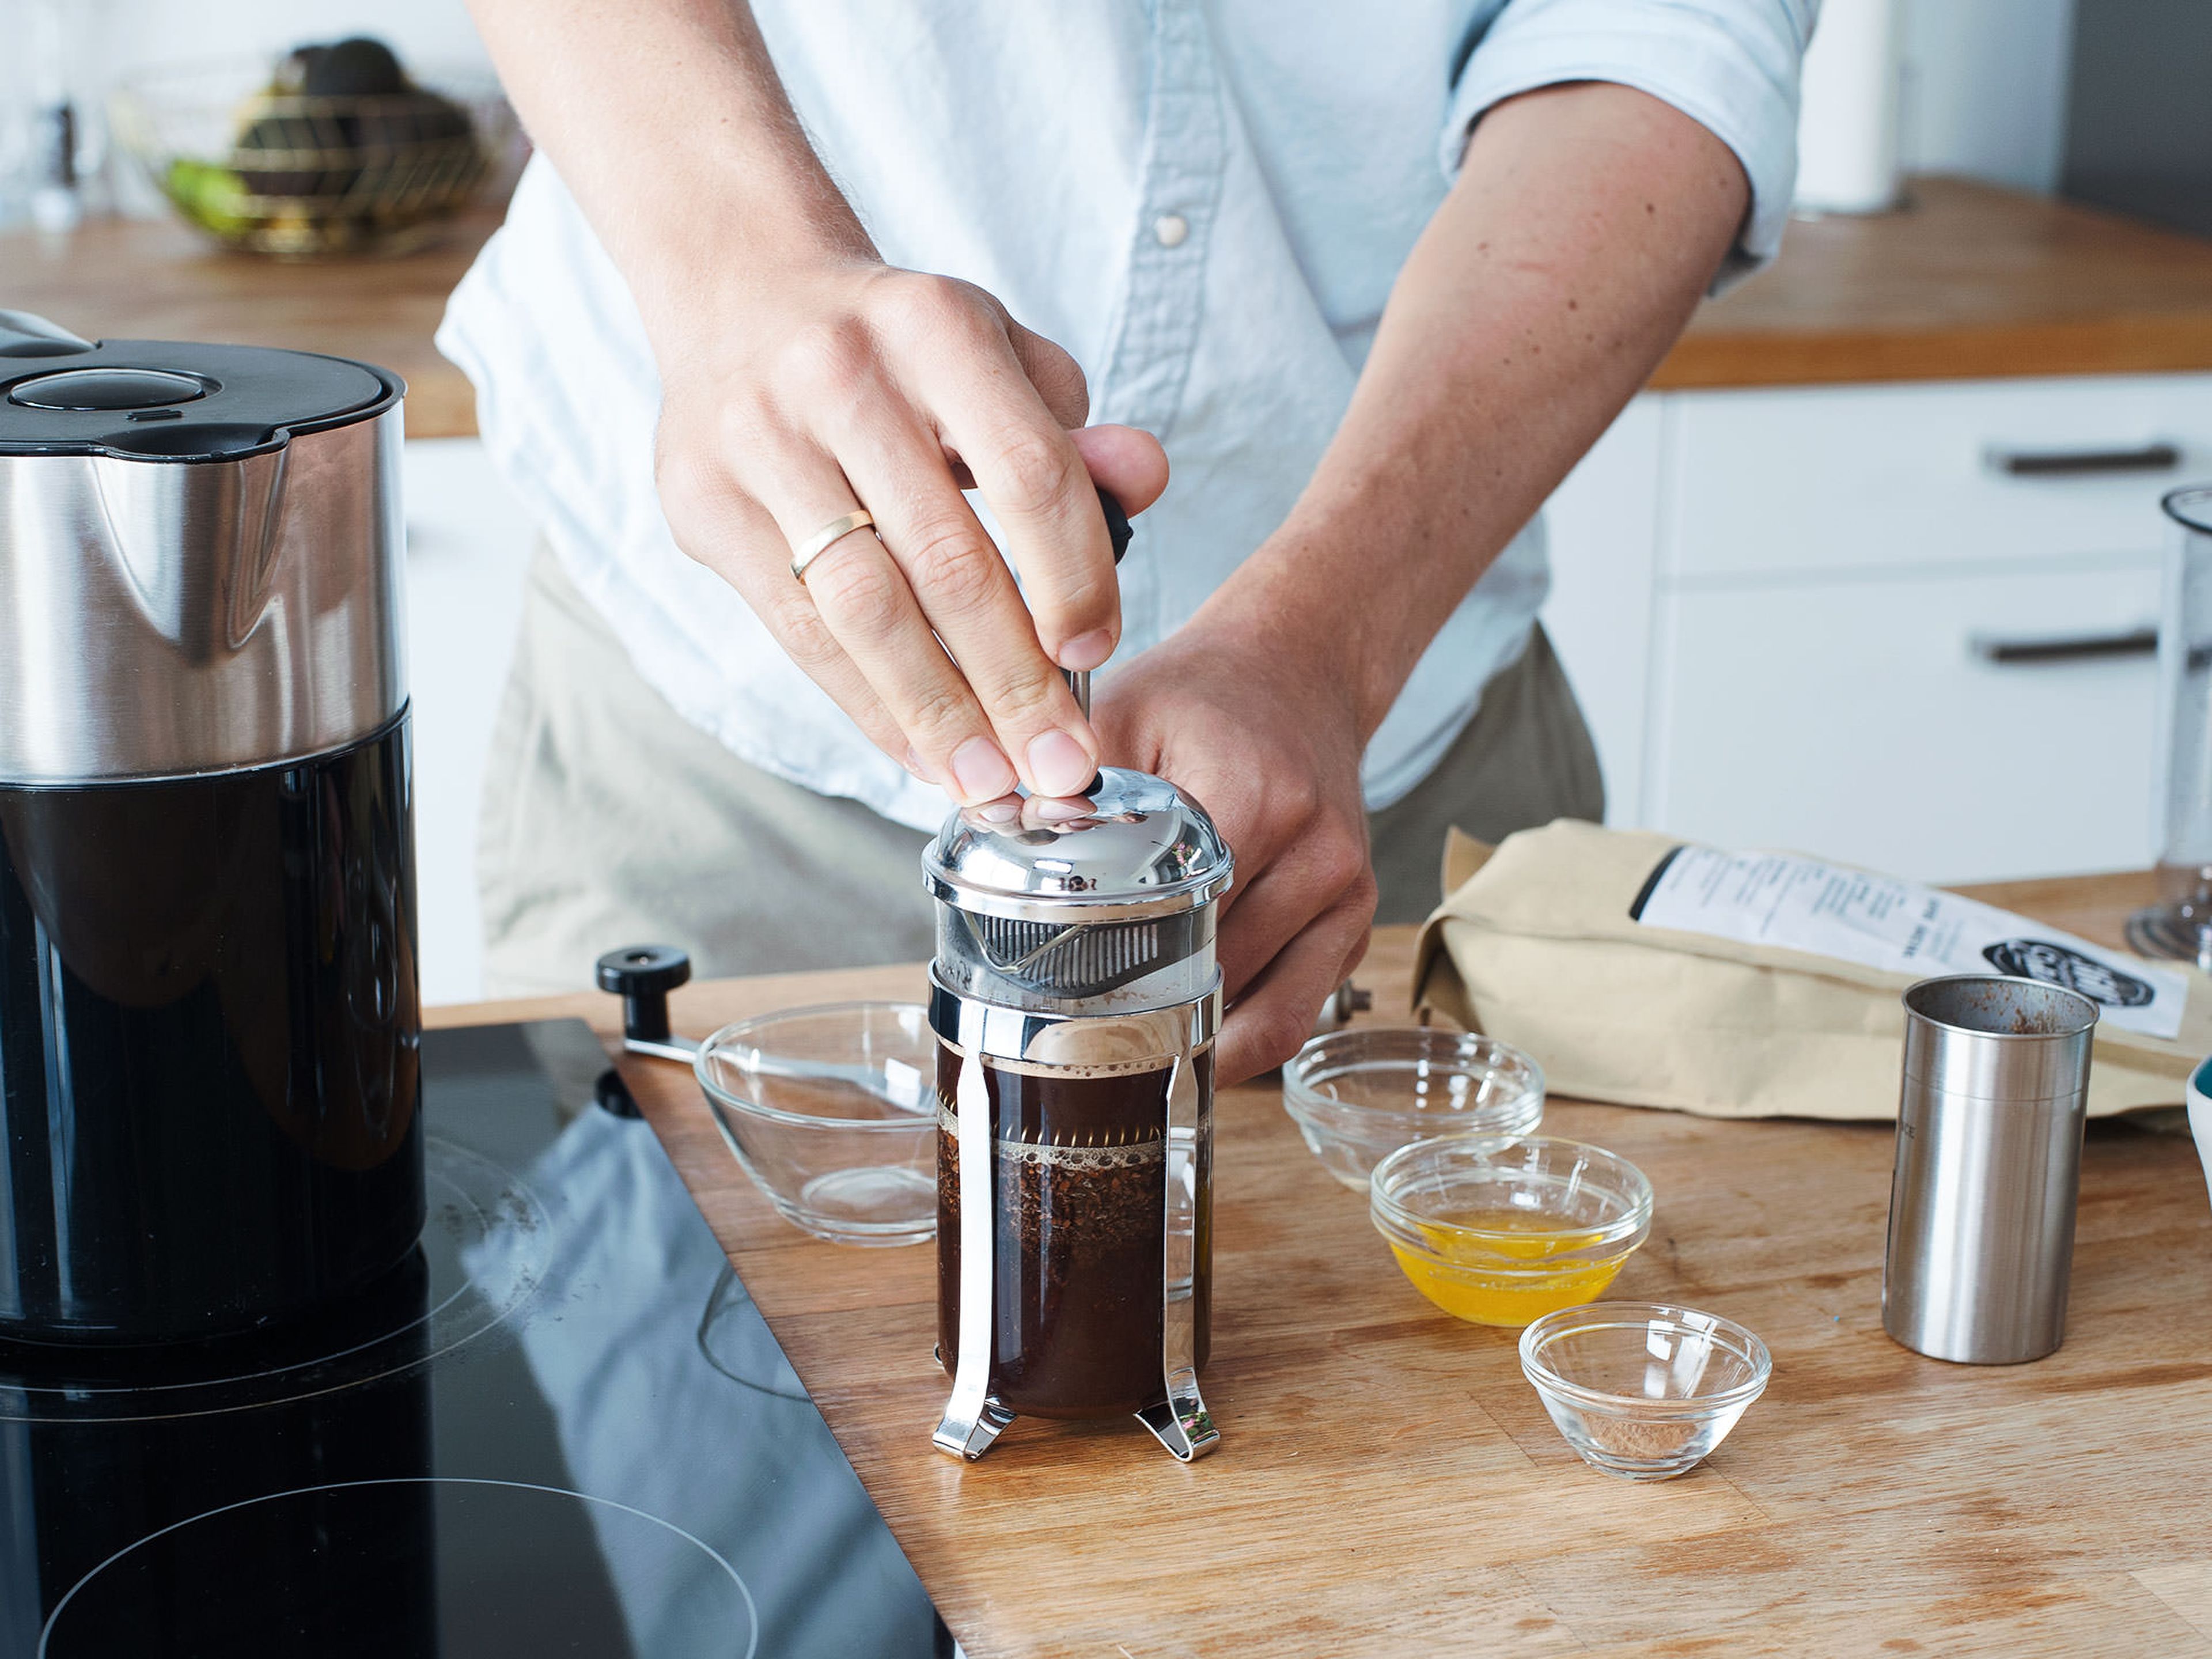 Mit kochendem Wasser frischen Kaffee nach bevorzugter Methode zubereiten, entweder mit einem Espressokocher oder einer Stempelkanne.